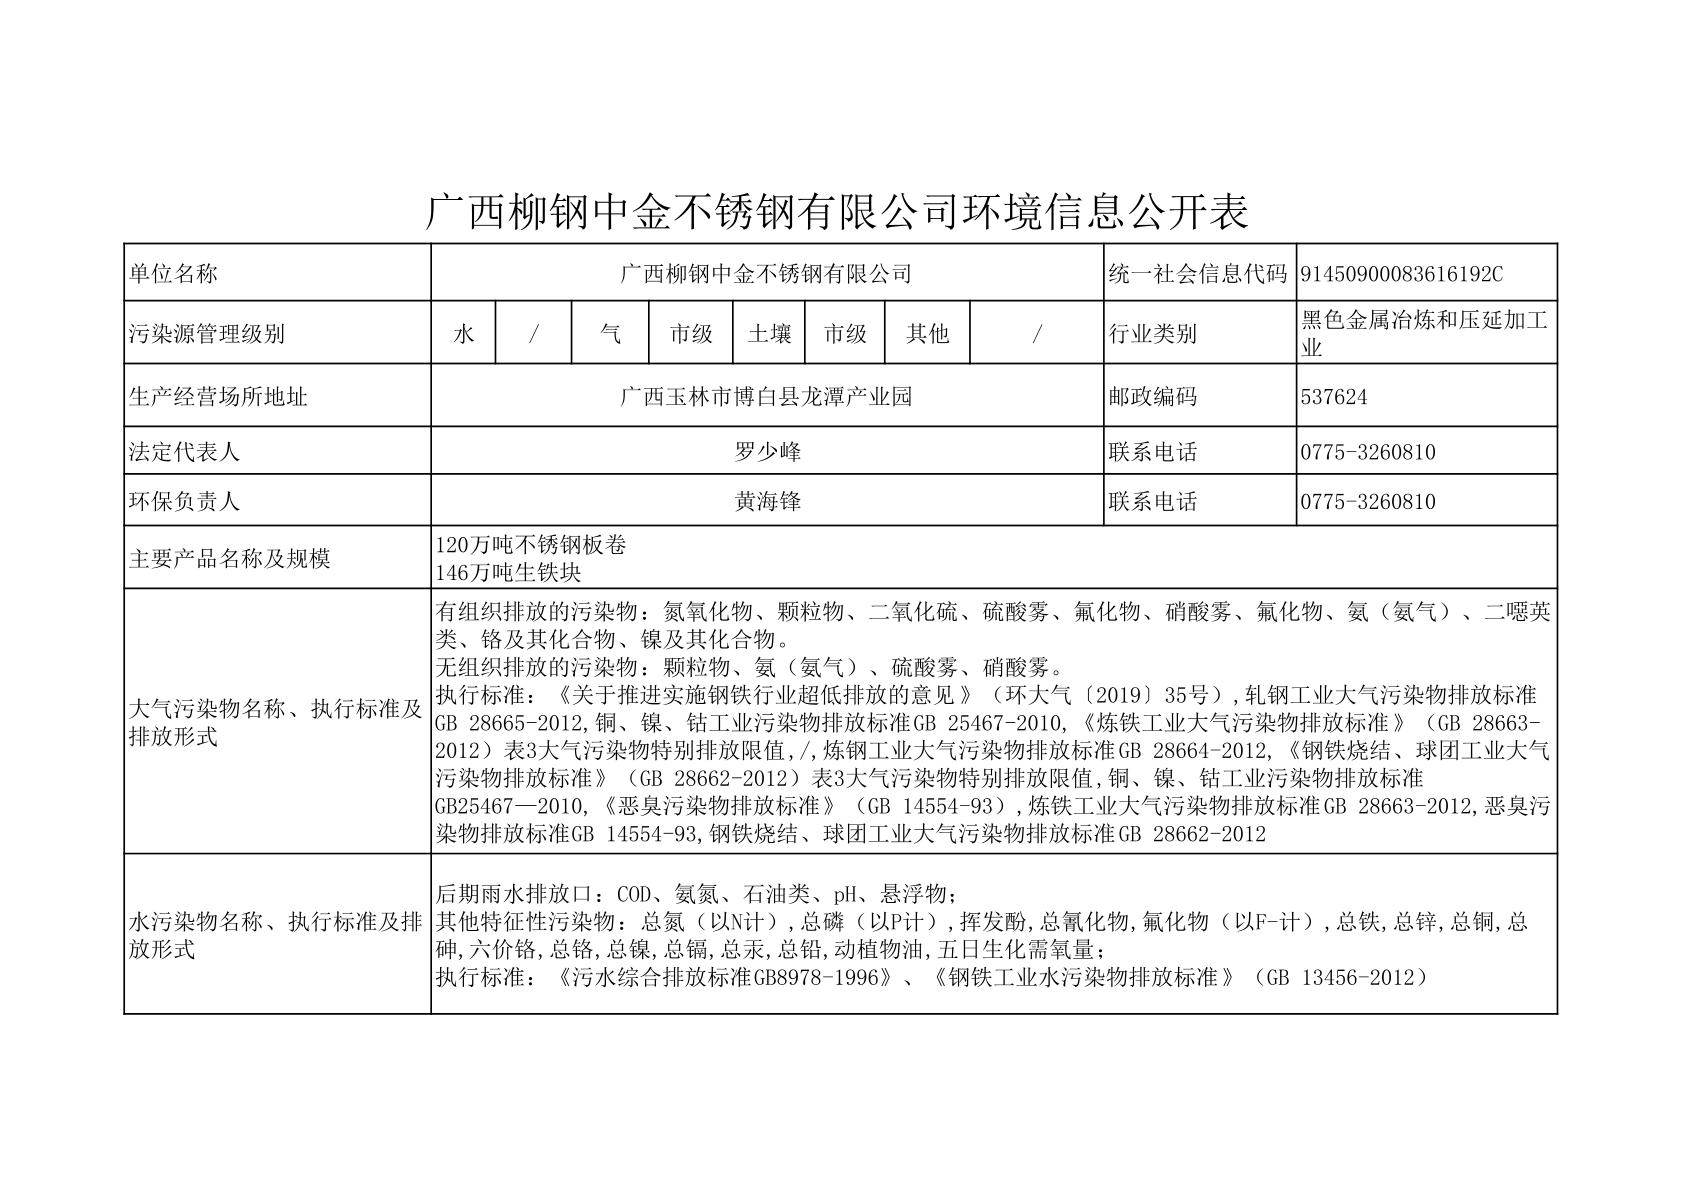 广西柳钢中金不锈钢有限公司环境信息公开表